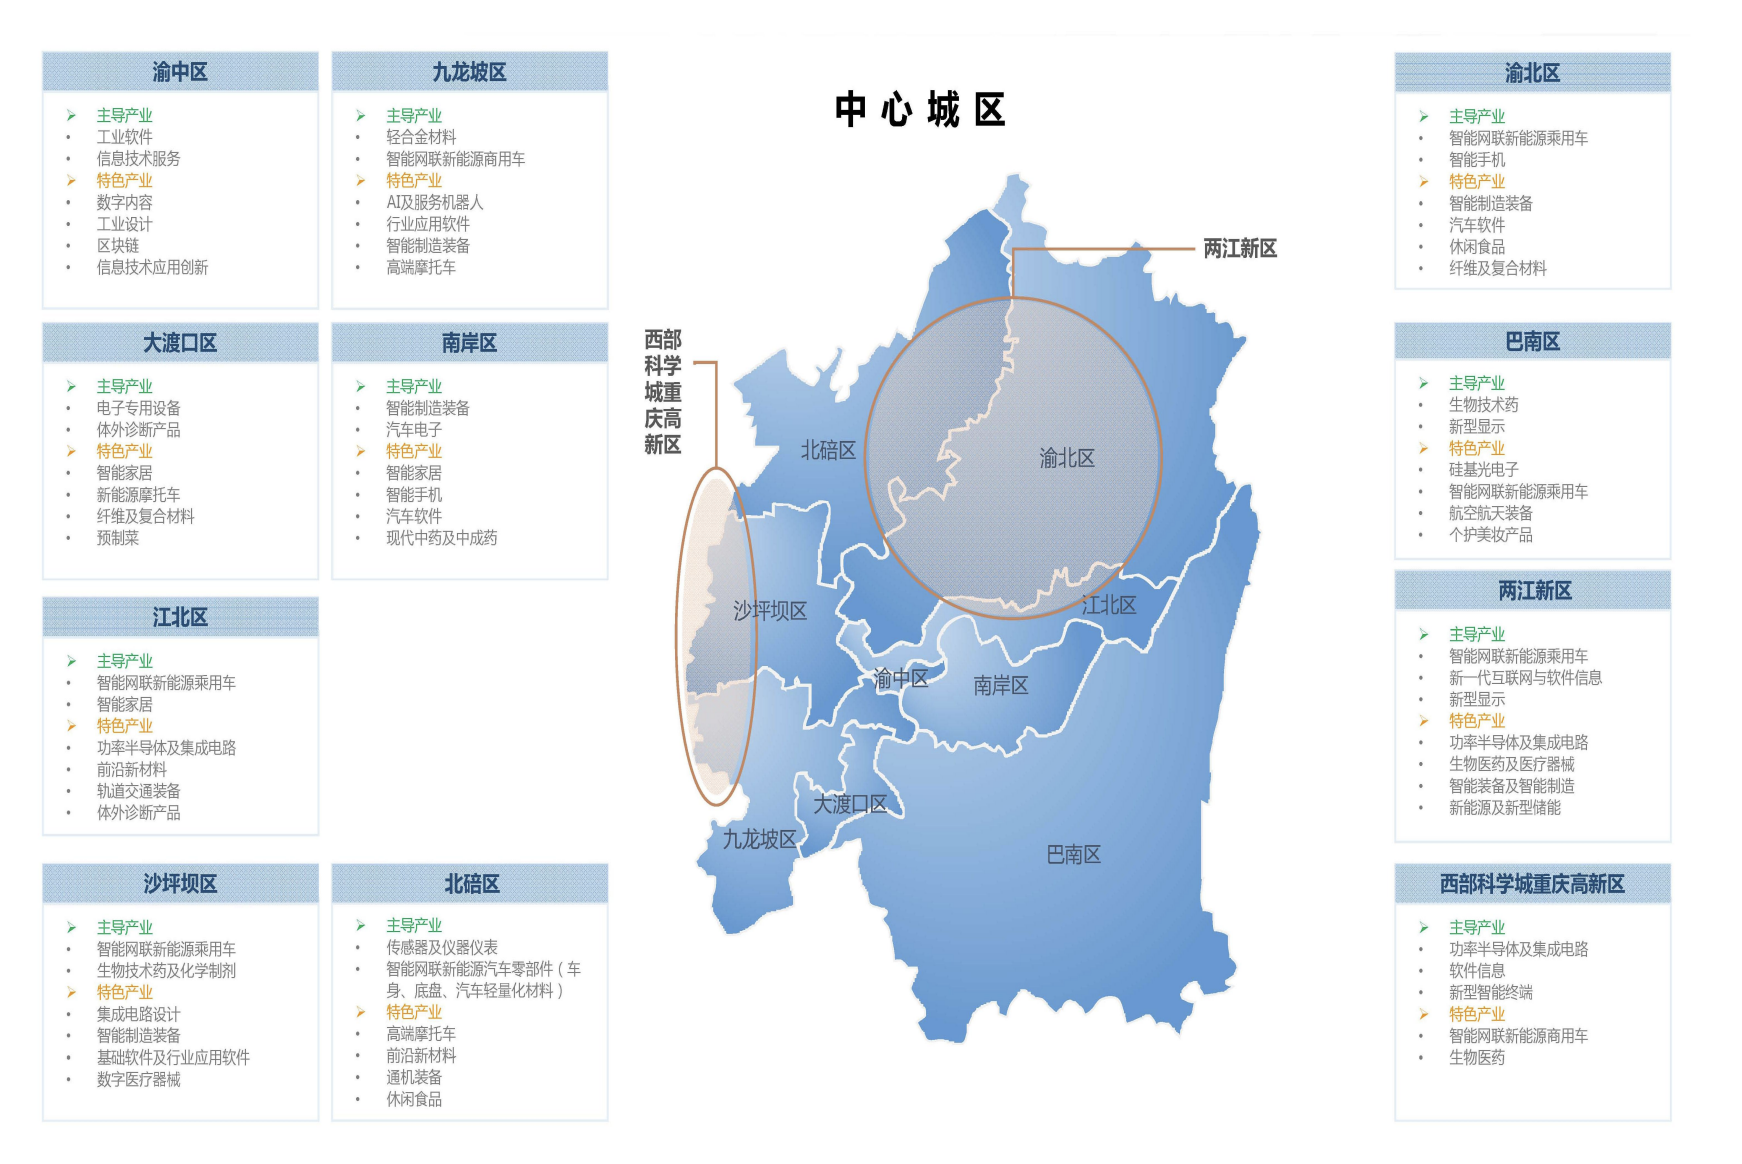 产业地图公布！来看重庆先进制造业如何布局1